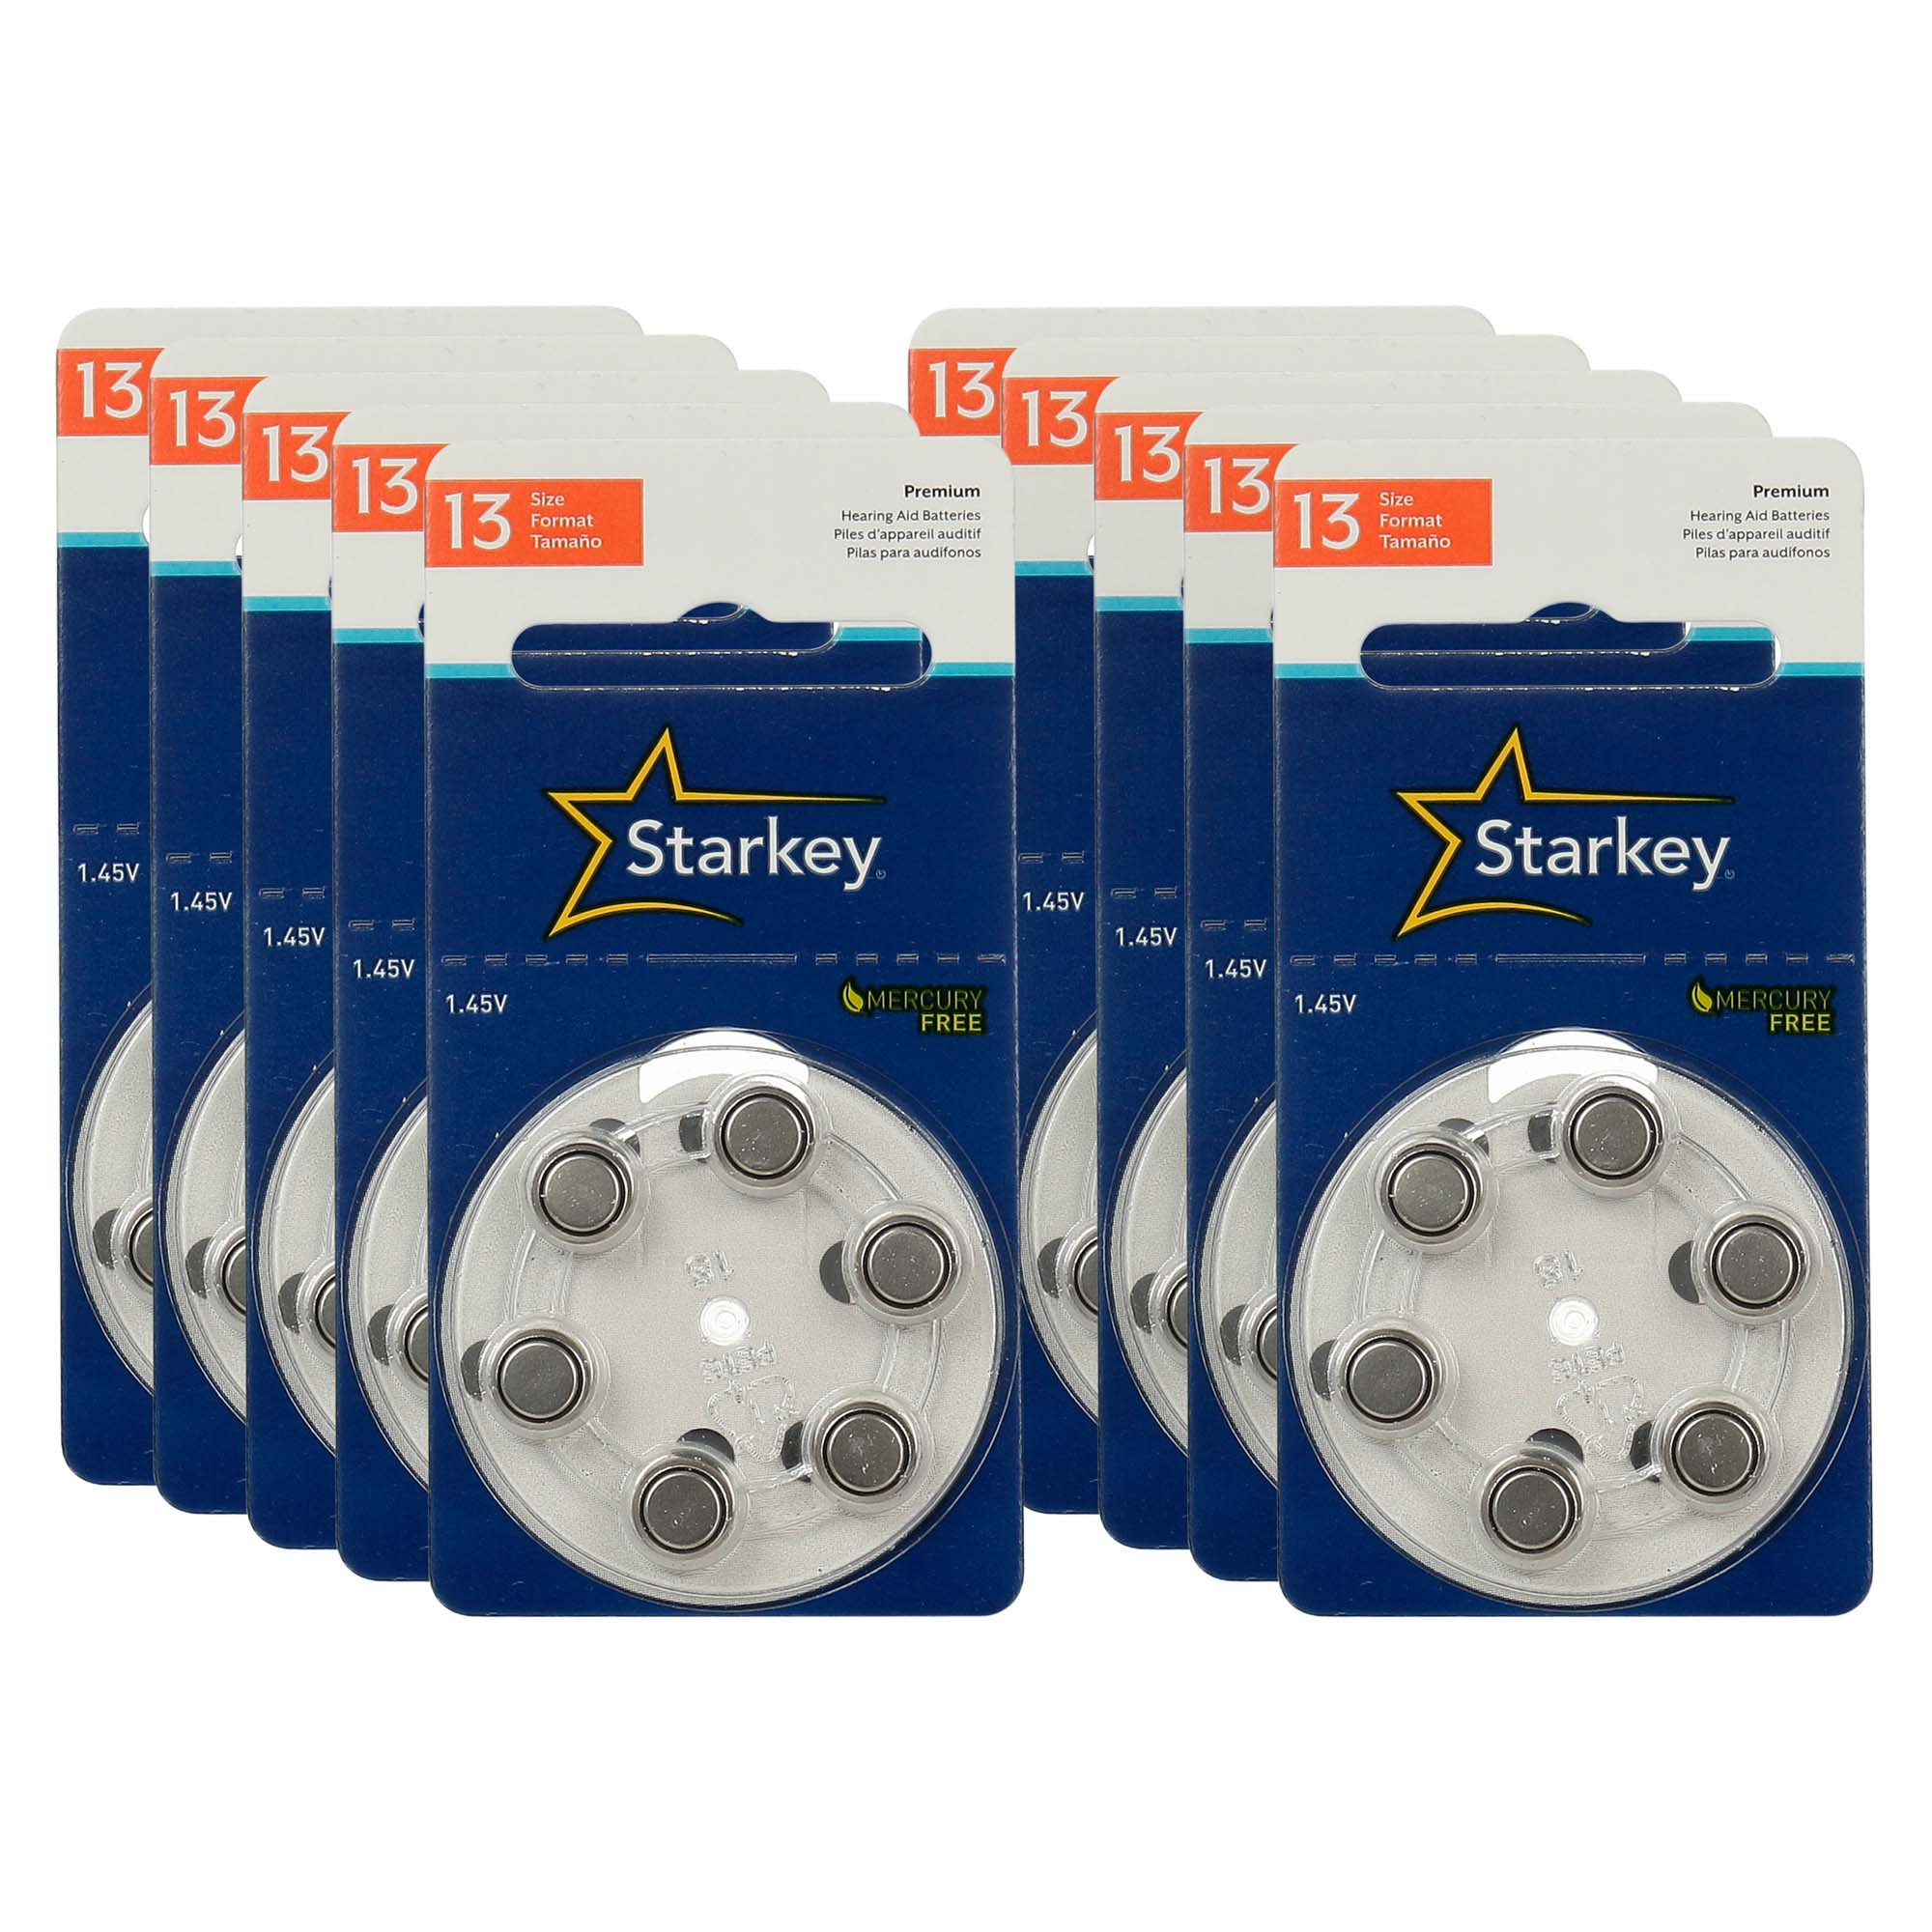 Starkey S13 / PR48 - 10 Cartelas - 60 Baterias para Aparelho Auditivo  - SONORA